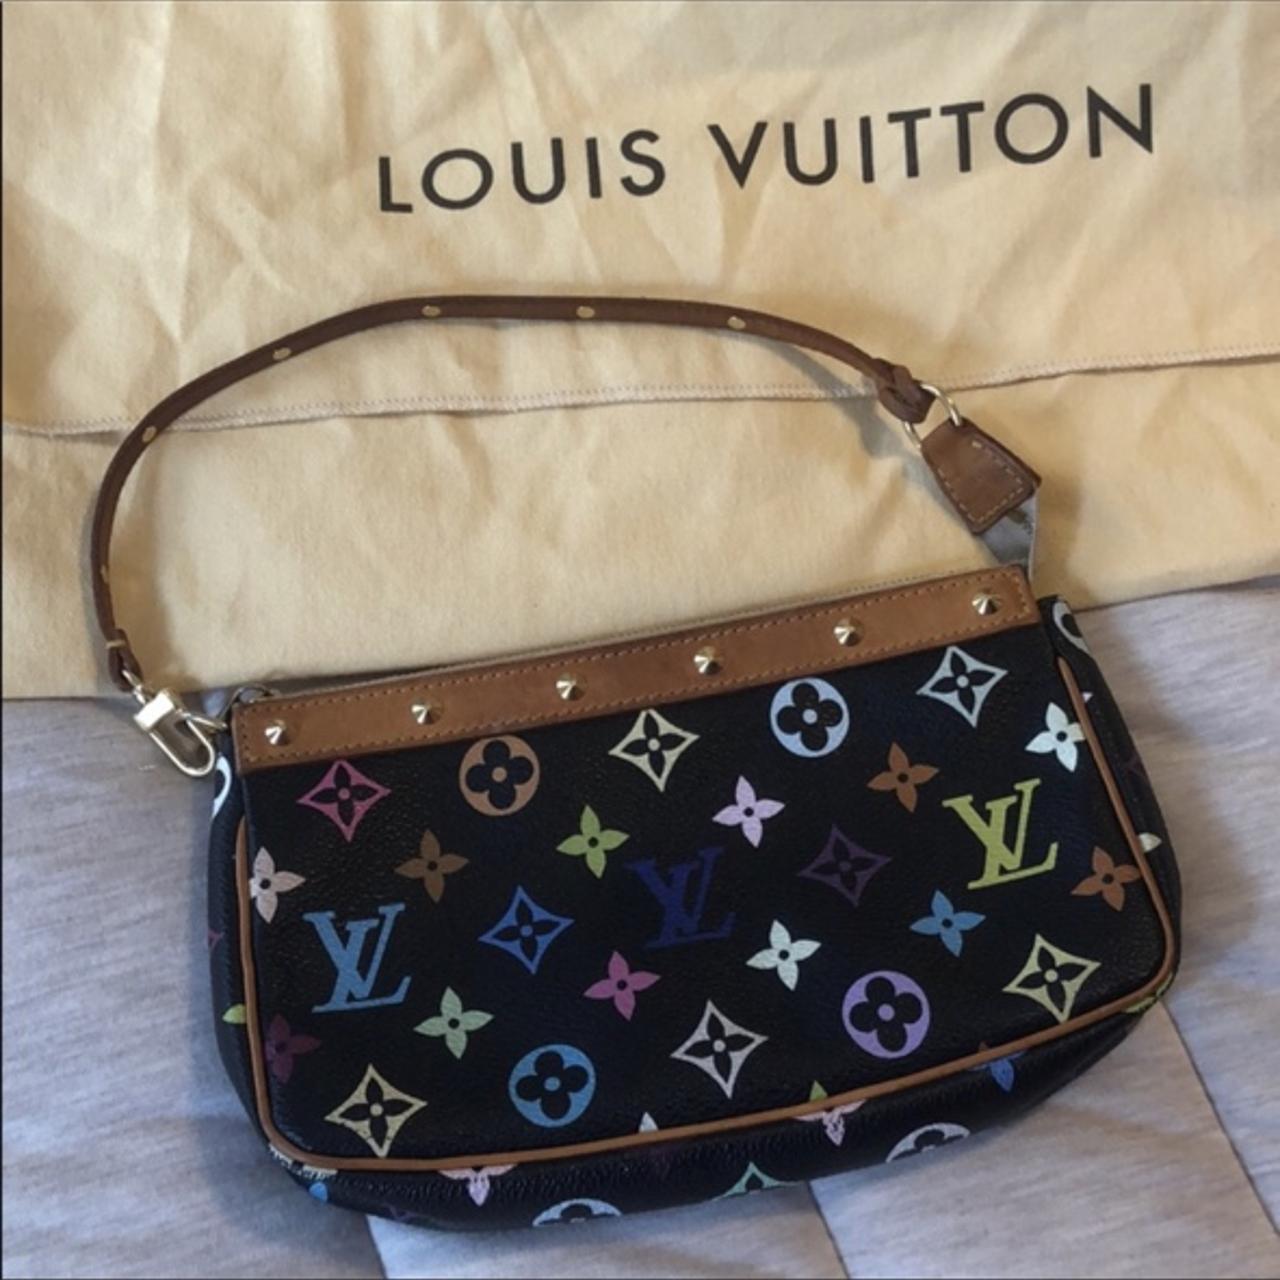 Louis Vuitton Black Monogram Multicolor wallet - Depop